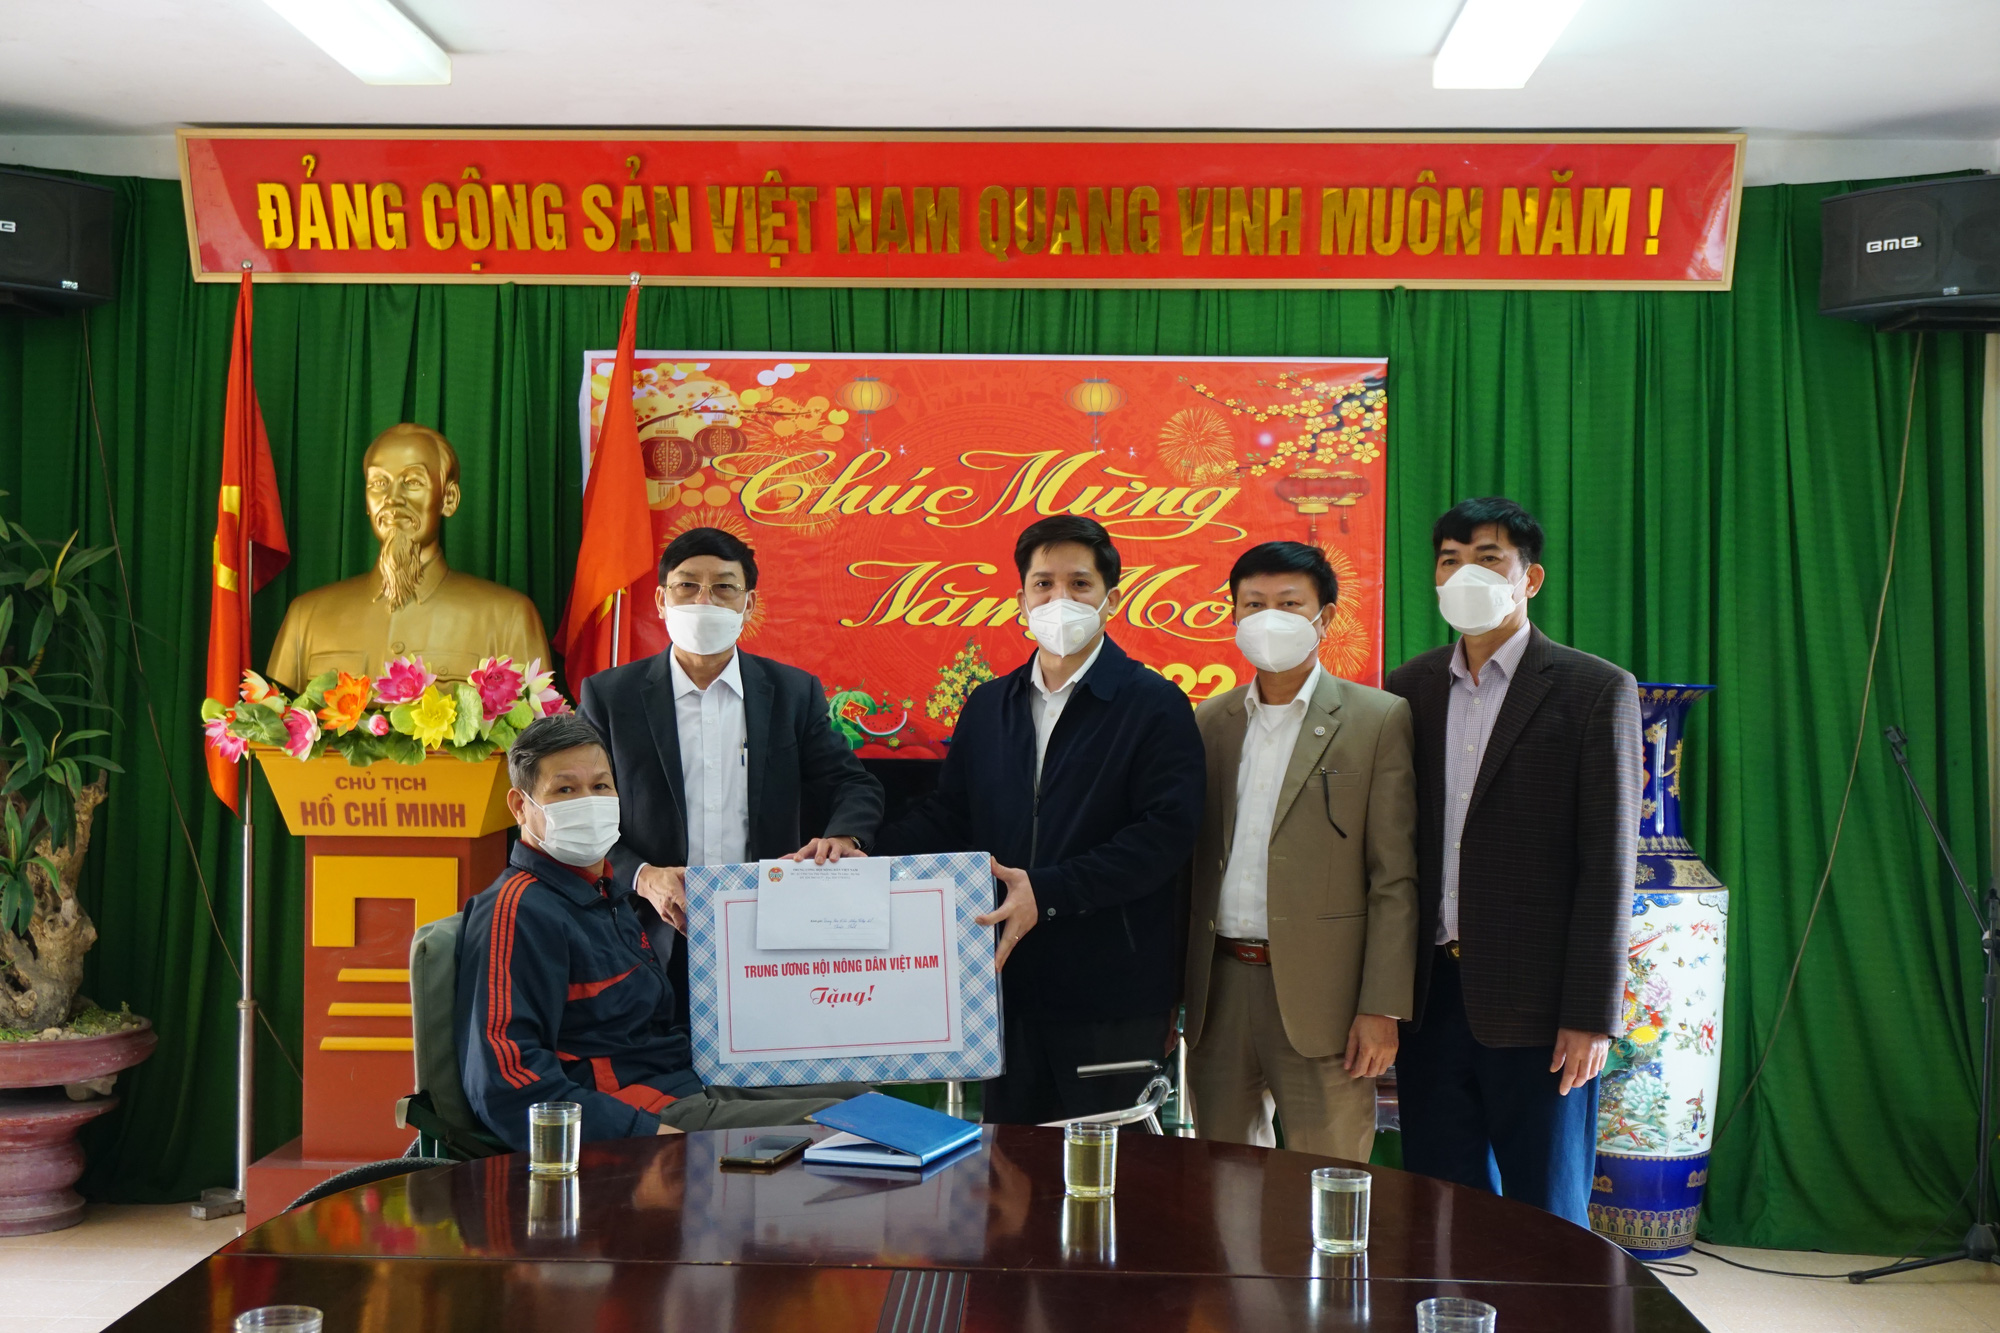 Phó Chủ tịch Trung ương Hội NDVN Phạm Tiến Nam thăm, tặng quà Trung tâm Điều dưỡng Thương binh Thuận Thành - Ảnh 1.